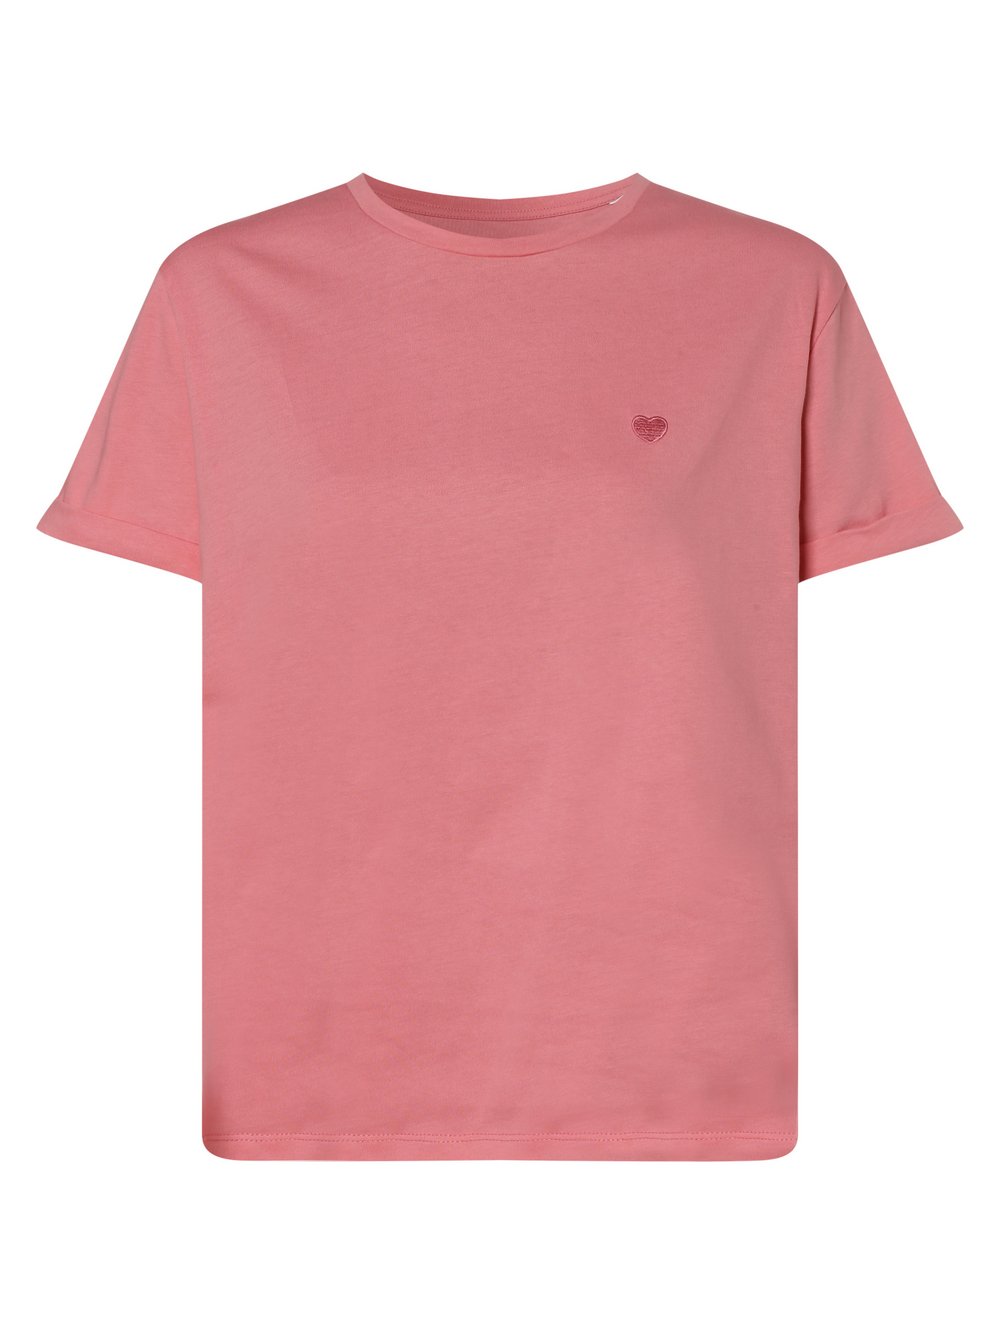 Opus - T-shirt damski – Serz, różowy